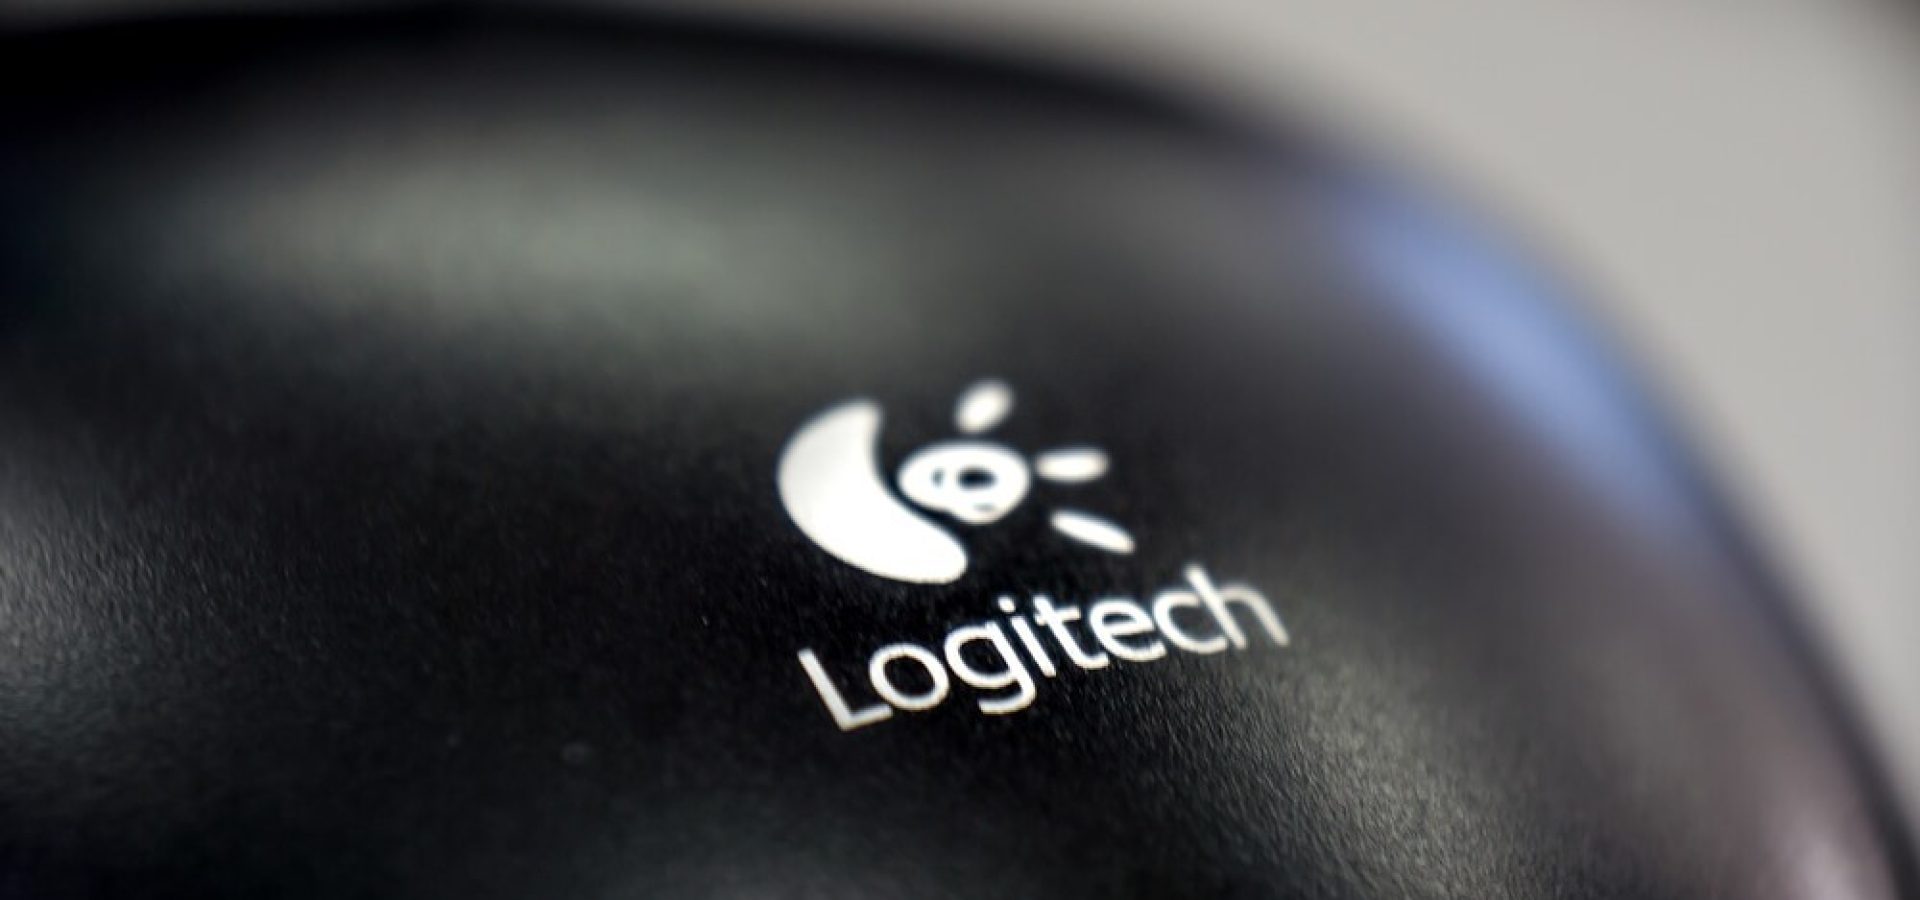 Logitech: Logitech brand on a mouse.